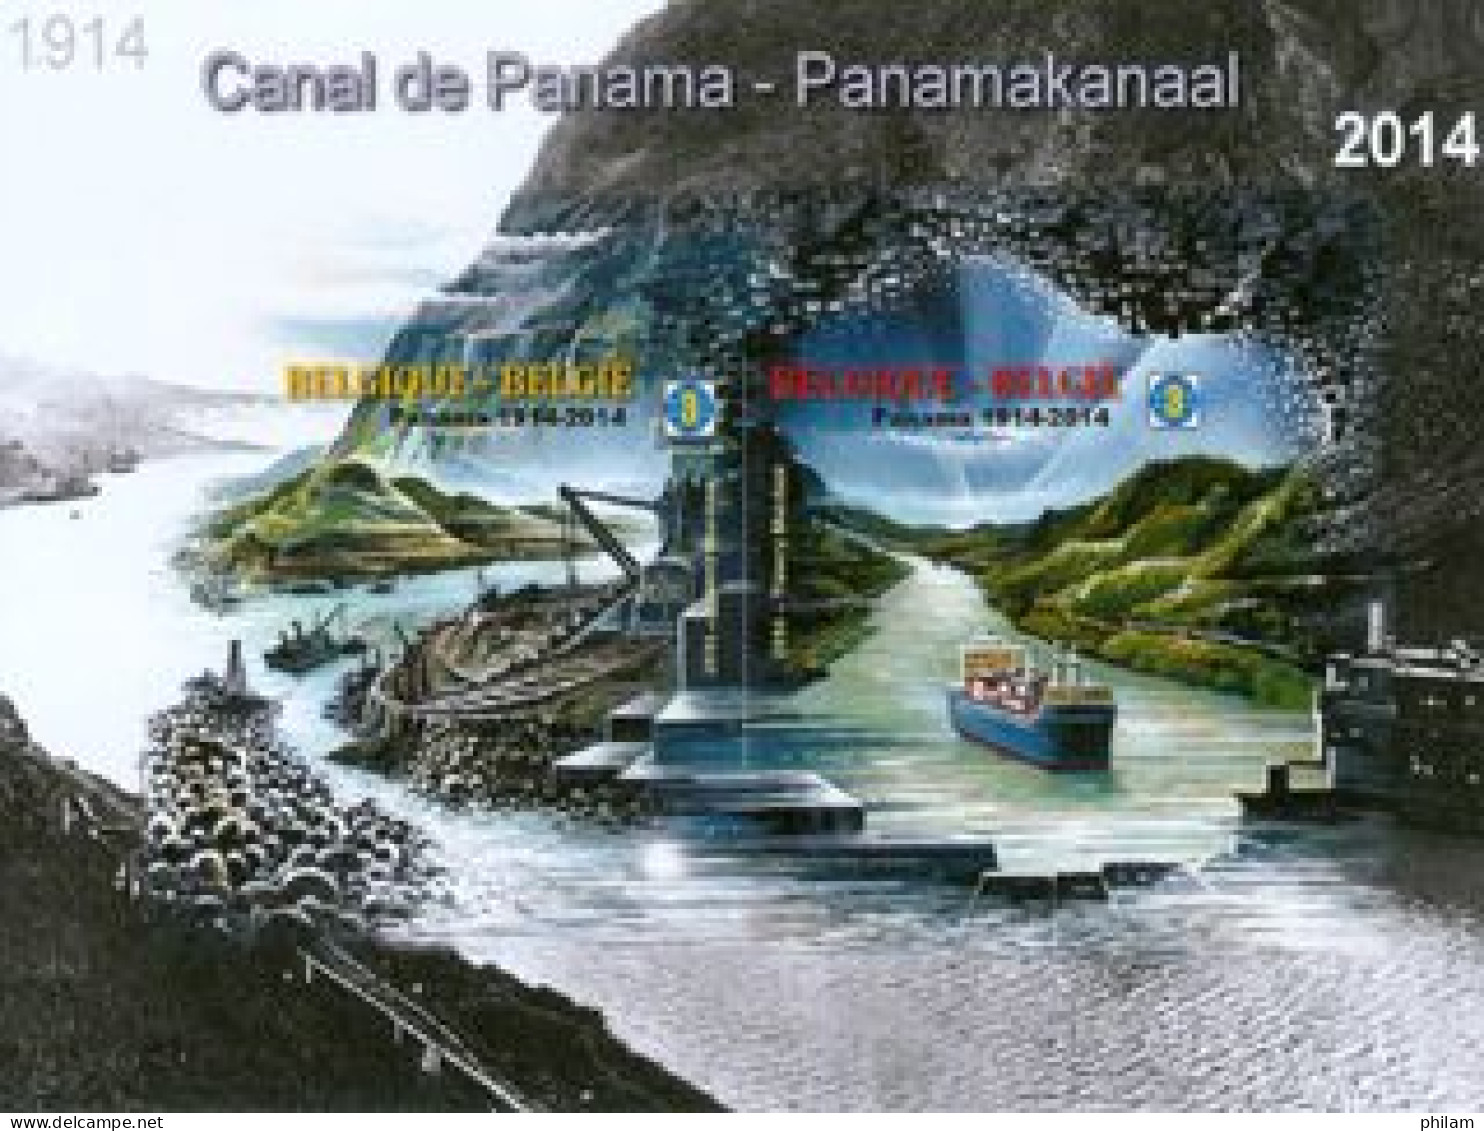 BELGIQUE 2013 - NA 30 -  Canal De Panama - Cat. 2014 - Niet-aangenomen Ontwerpen [NA]